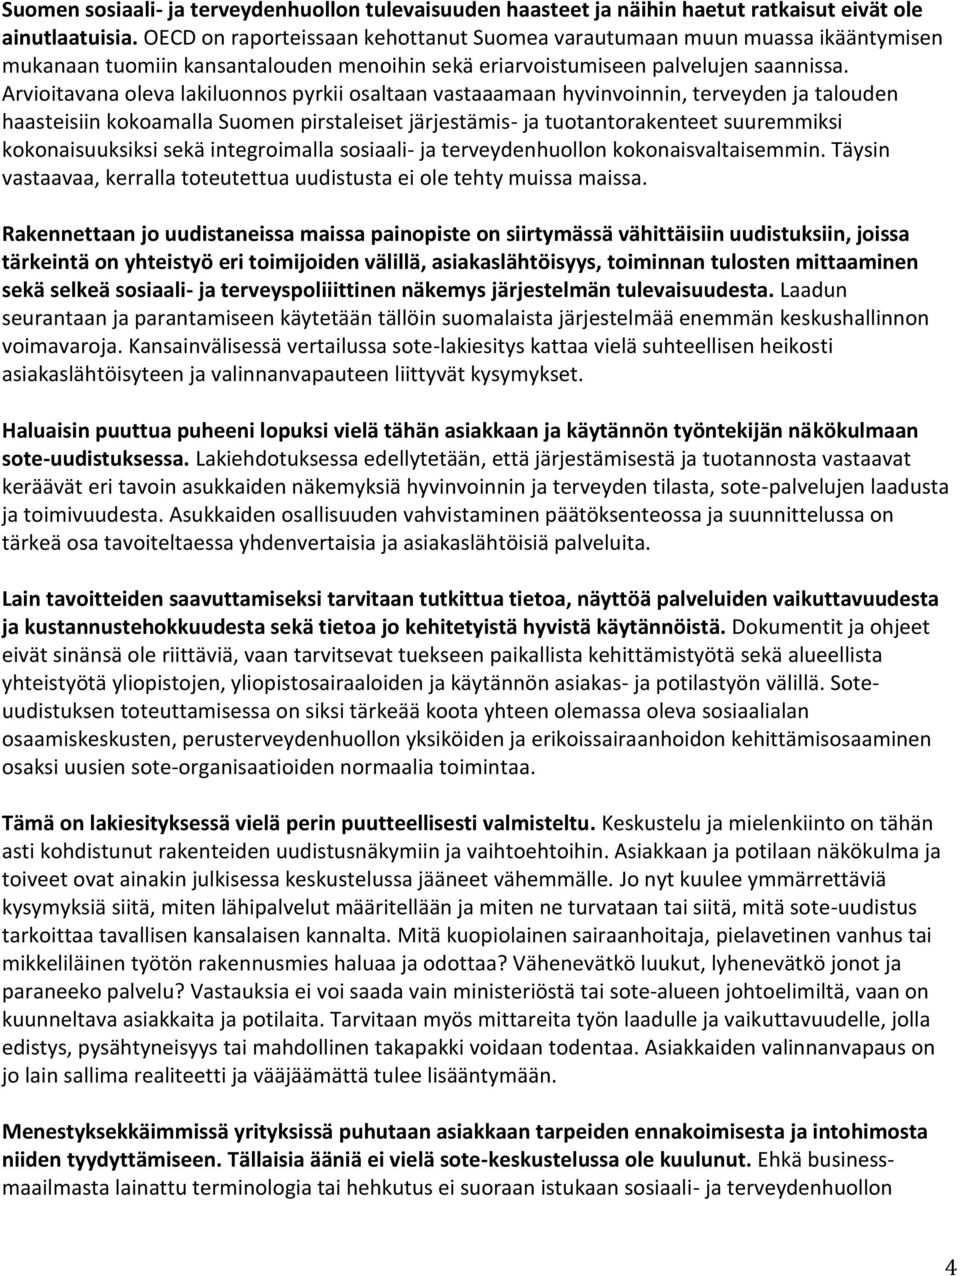 Arvioitavana oleva lakiluonnos pyrkii osaltaan vastaaamaan hyvinvoinnin, terveyden ja talouden haasteisiin kokoamalla Suomen pirstaleiset järjestämis- ja tuotantorakenteet suuremmiksi